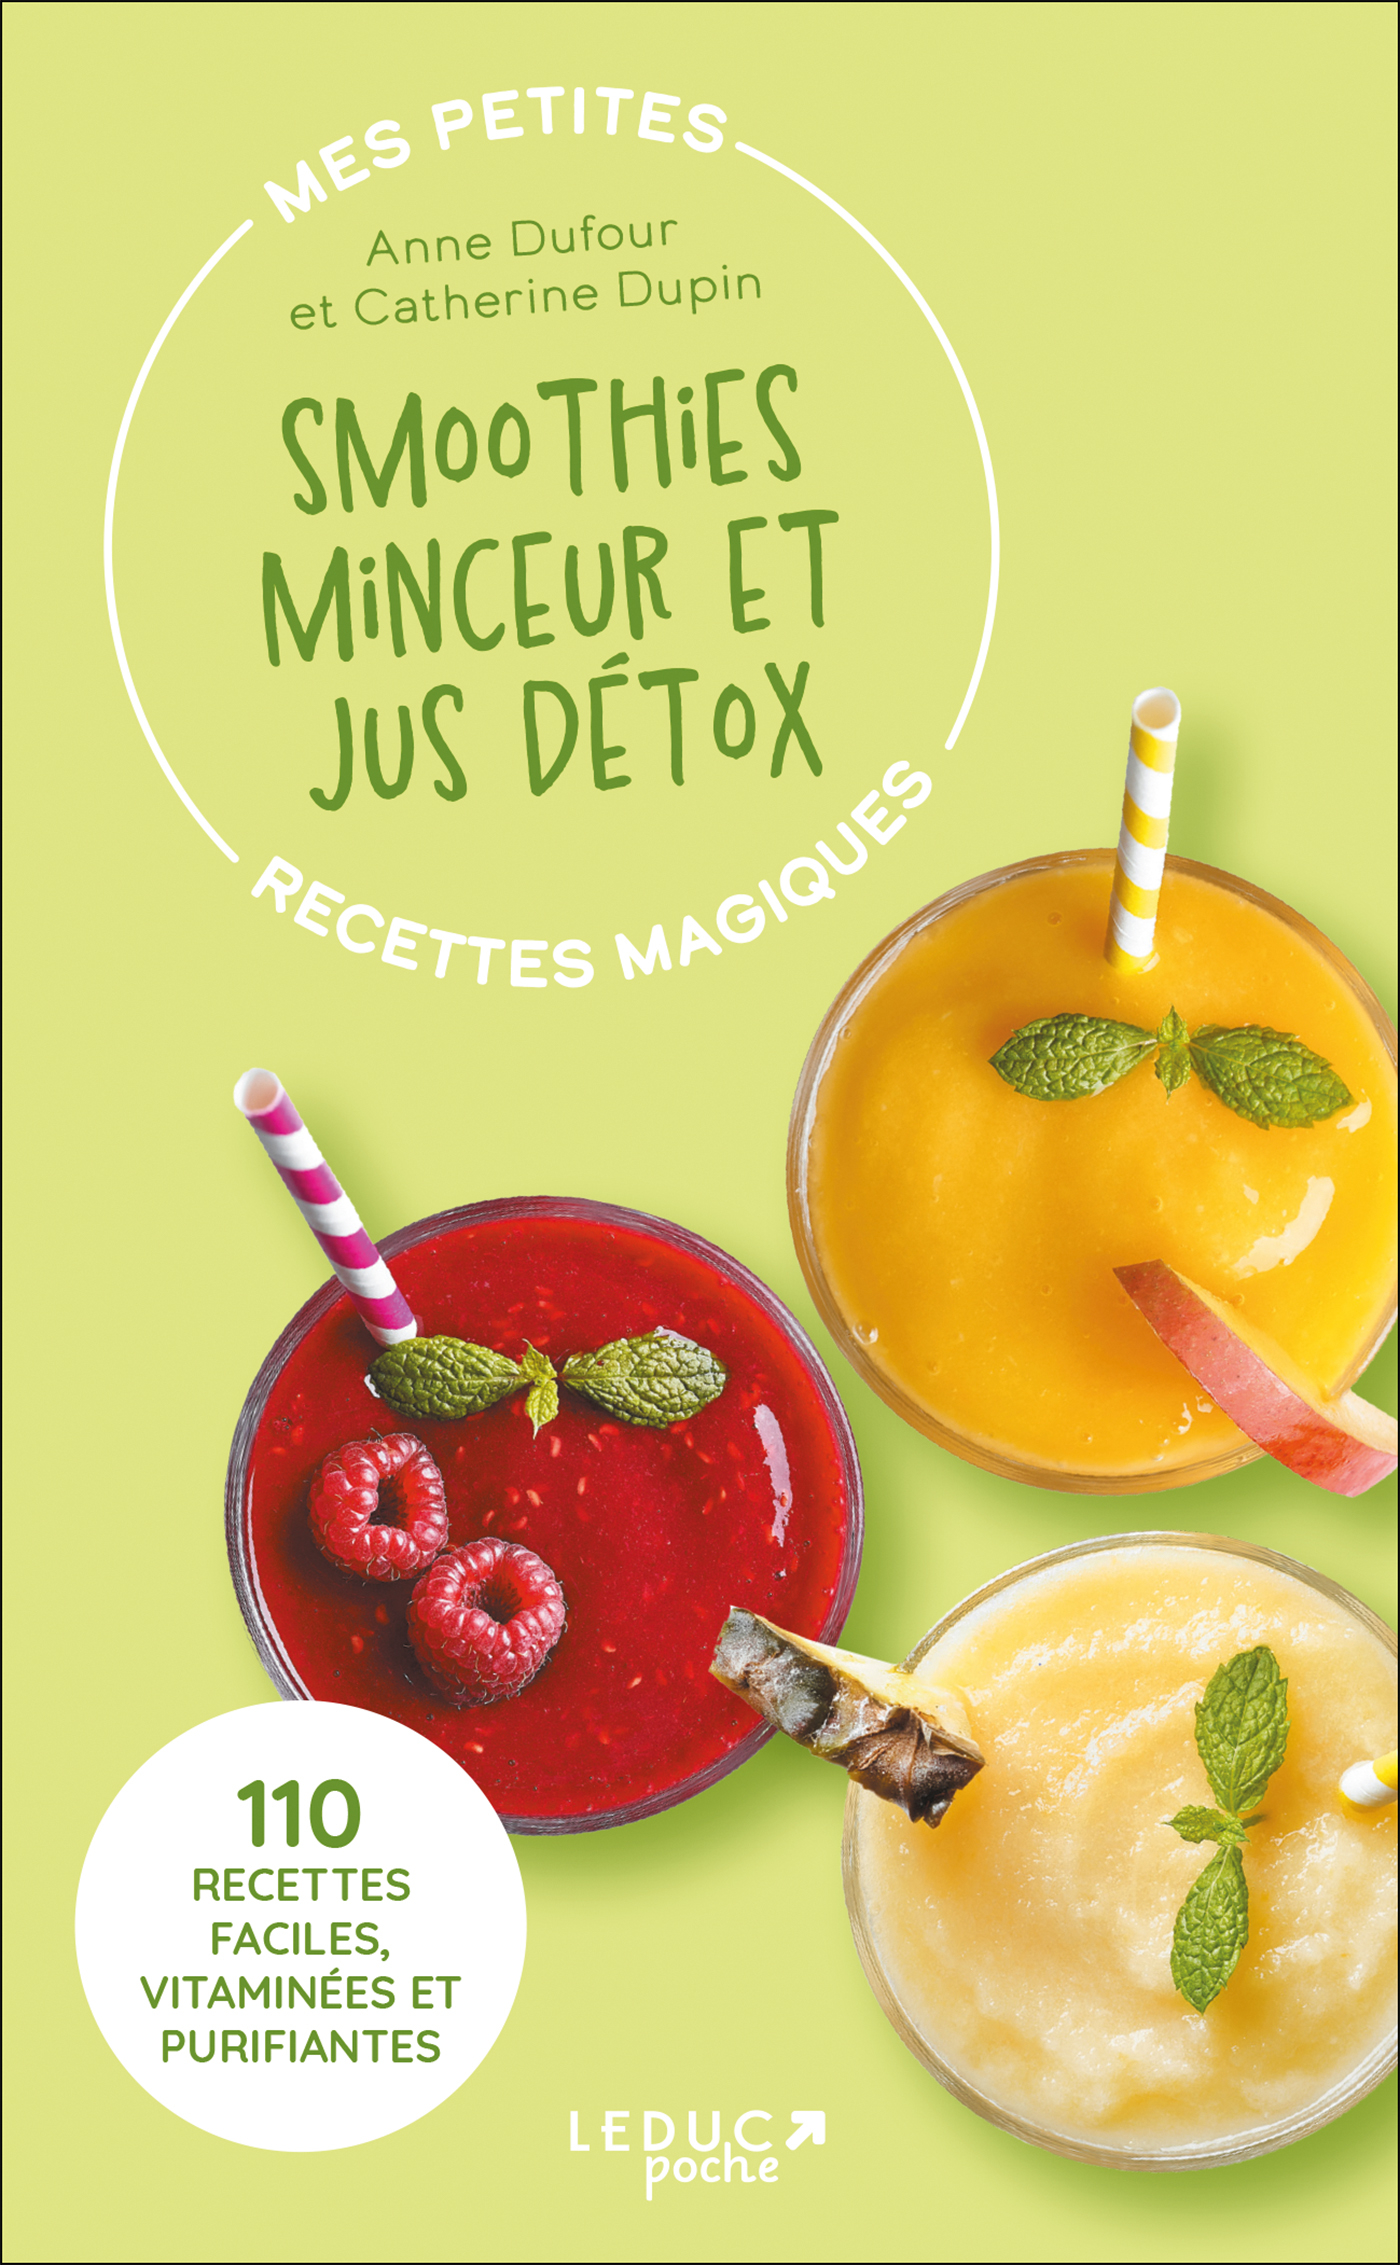 10 recettes de jus maison détox - Marie Claire